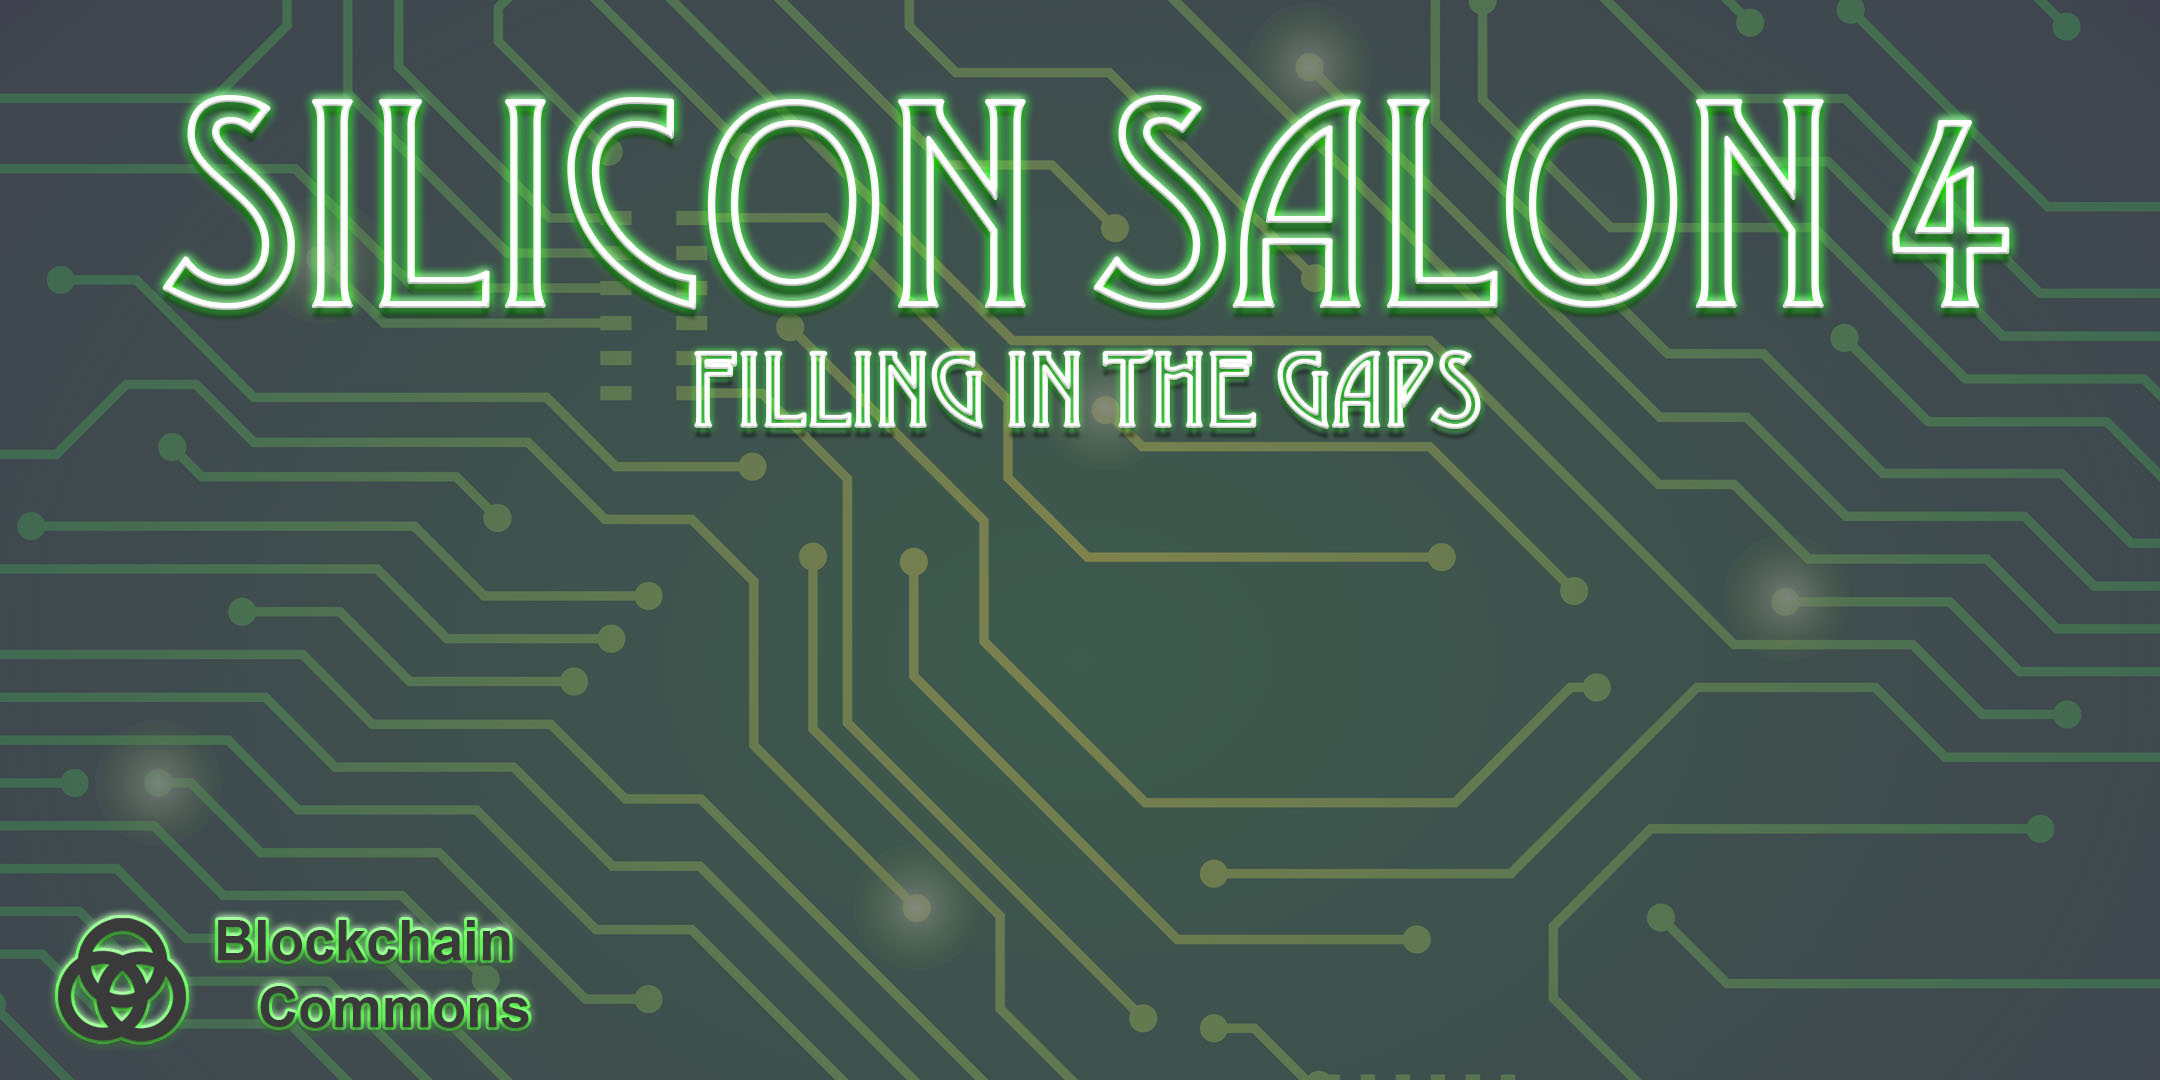 Silicon Salon 4